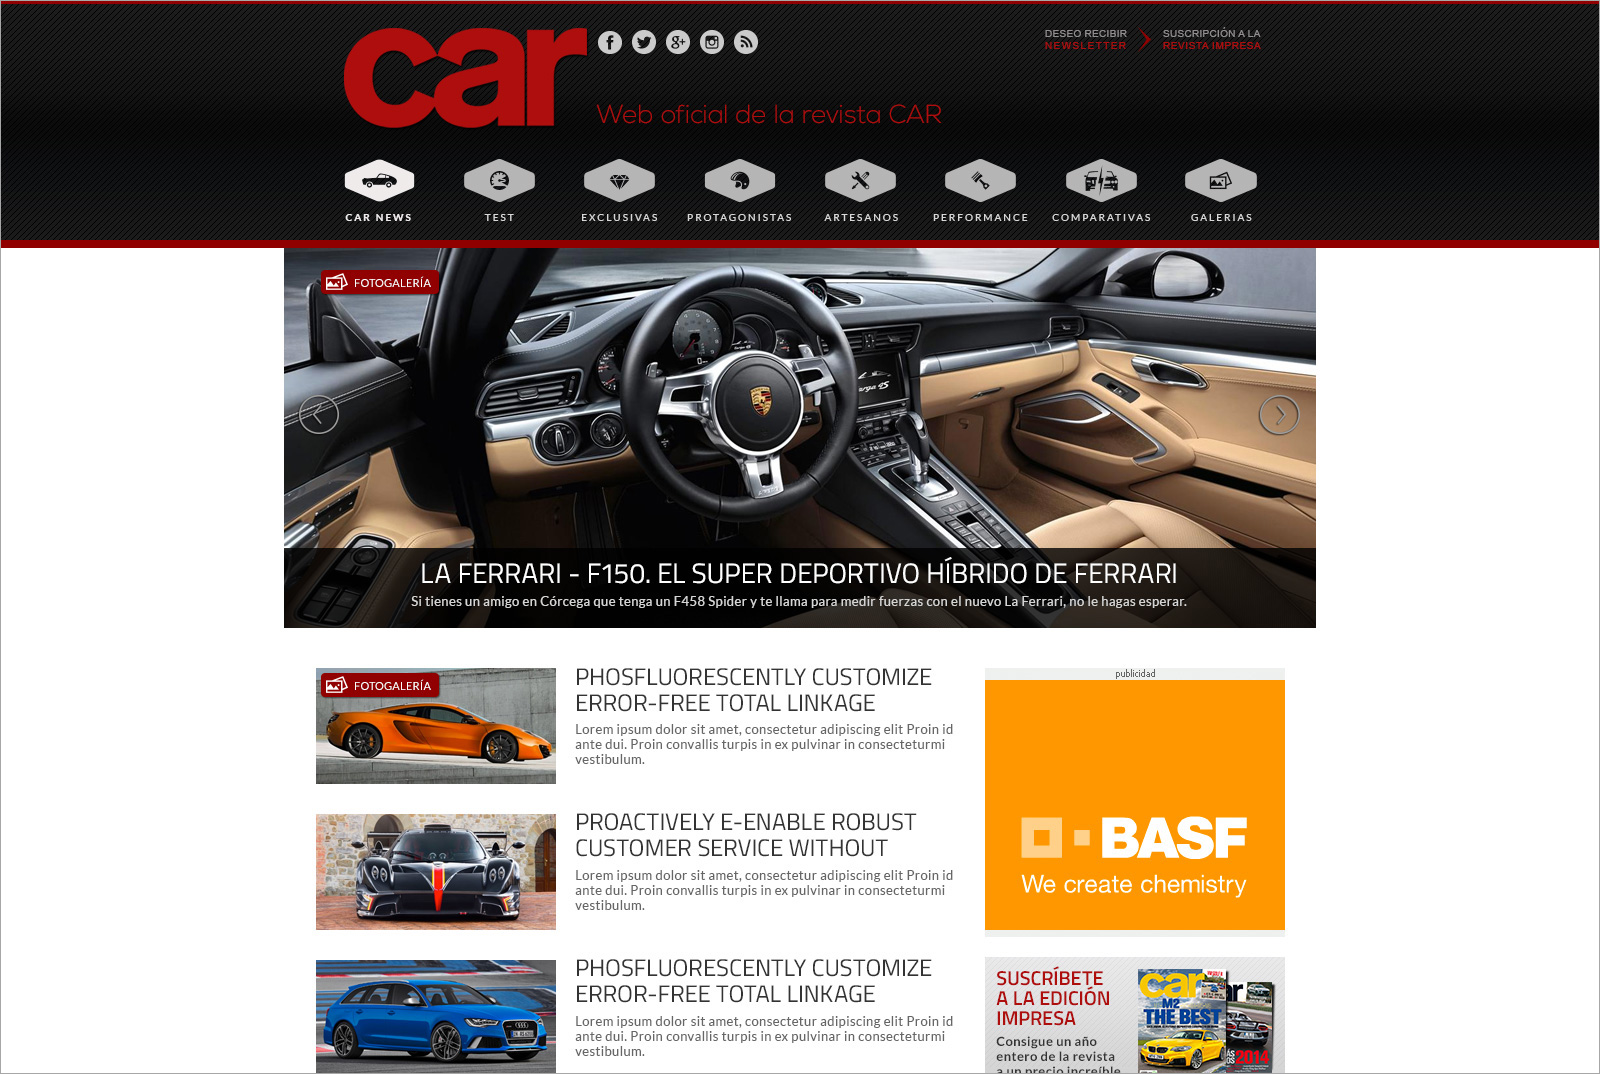 Revista Car – Web